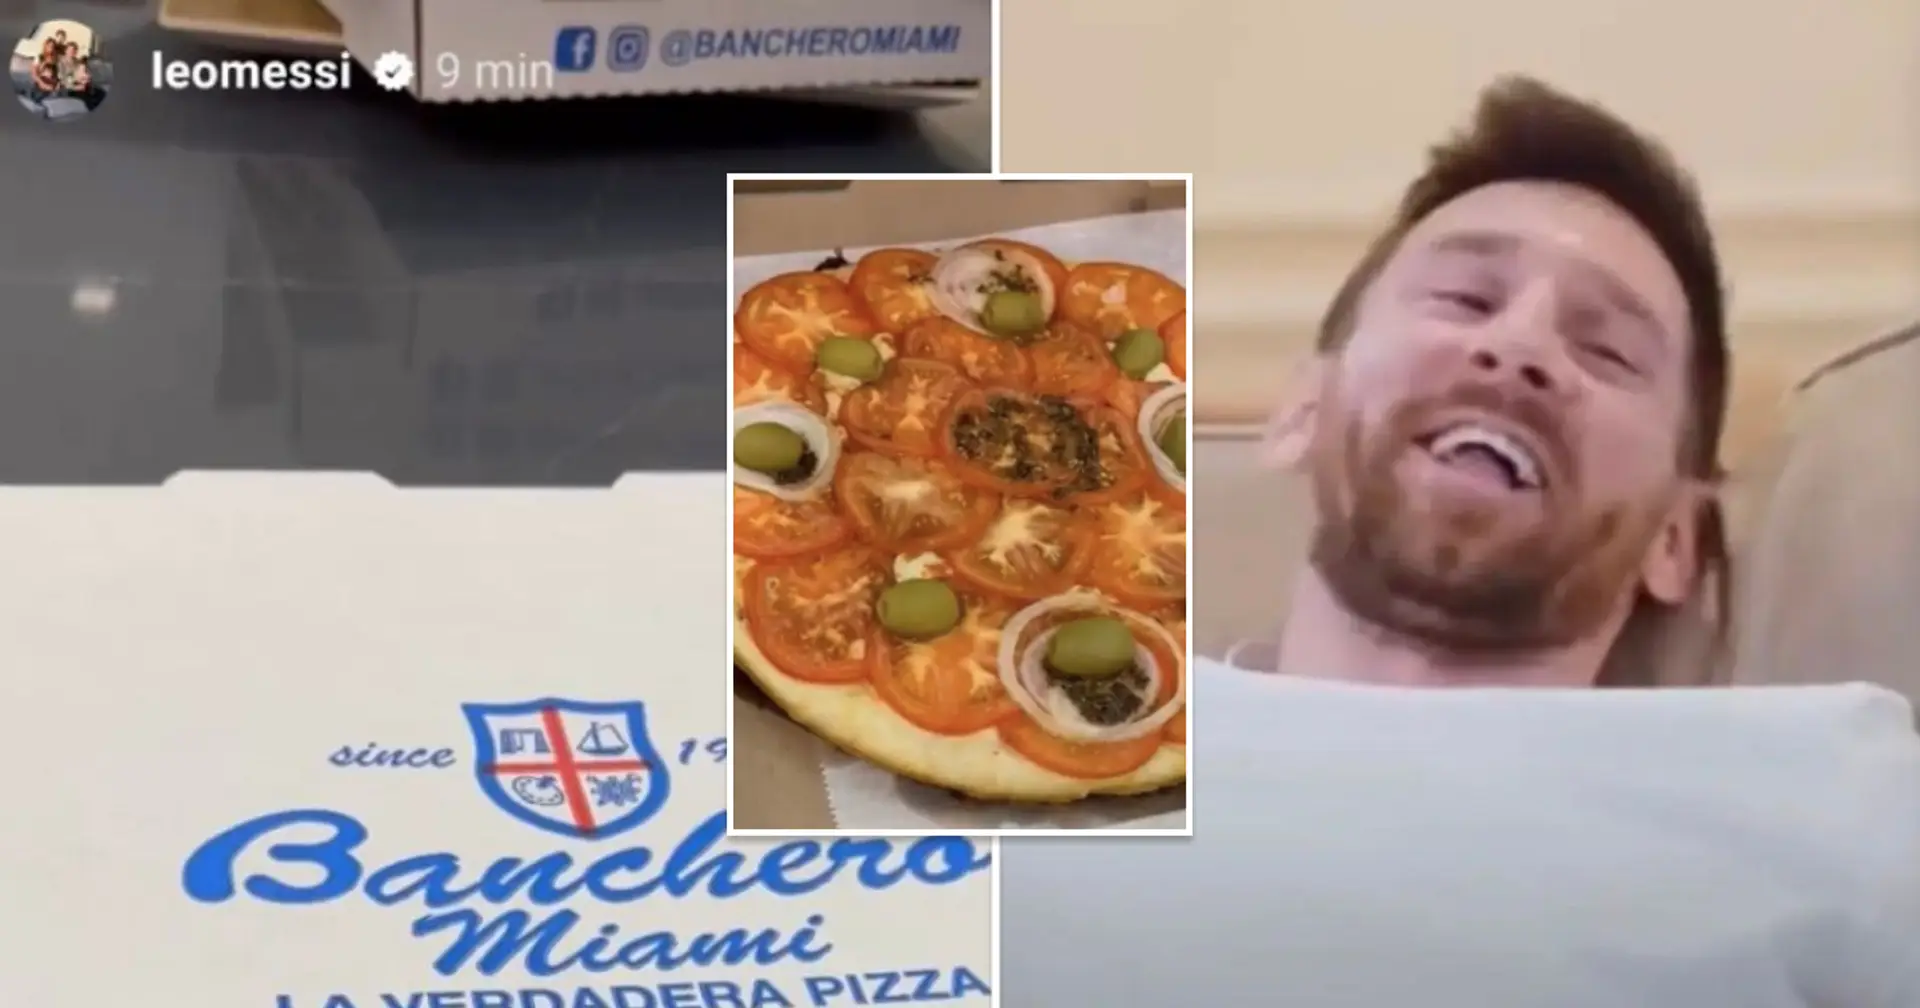 Leo Messi confirme qu'il manquera le prochain match de l'Inter Miami avec une publication Instagram mettant en vedette "les pires fans de pizza jamais vus"